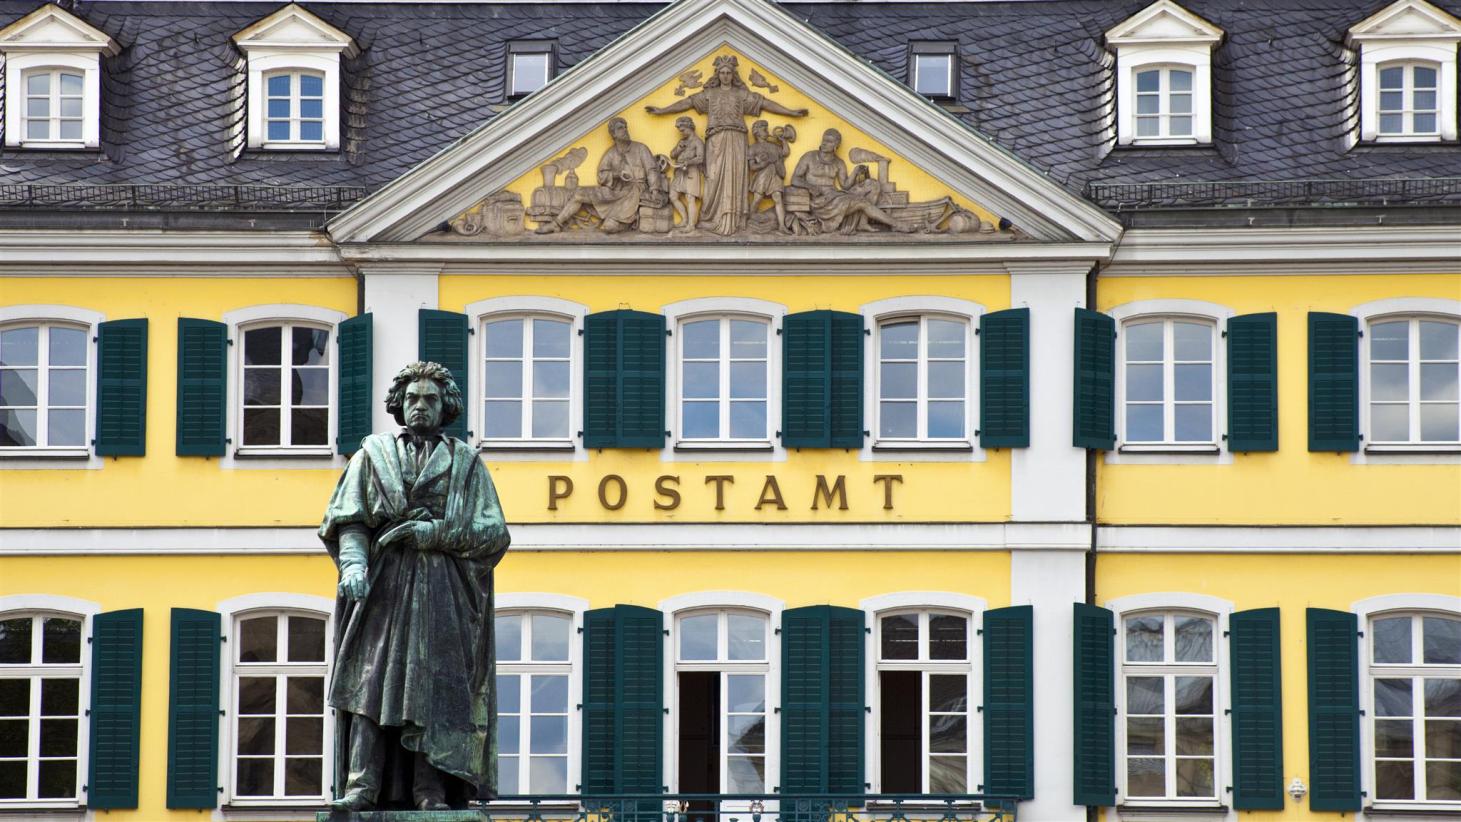 Hotel Garten Bonn Neu 30 Best Bonn Hotels In 2020